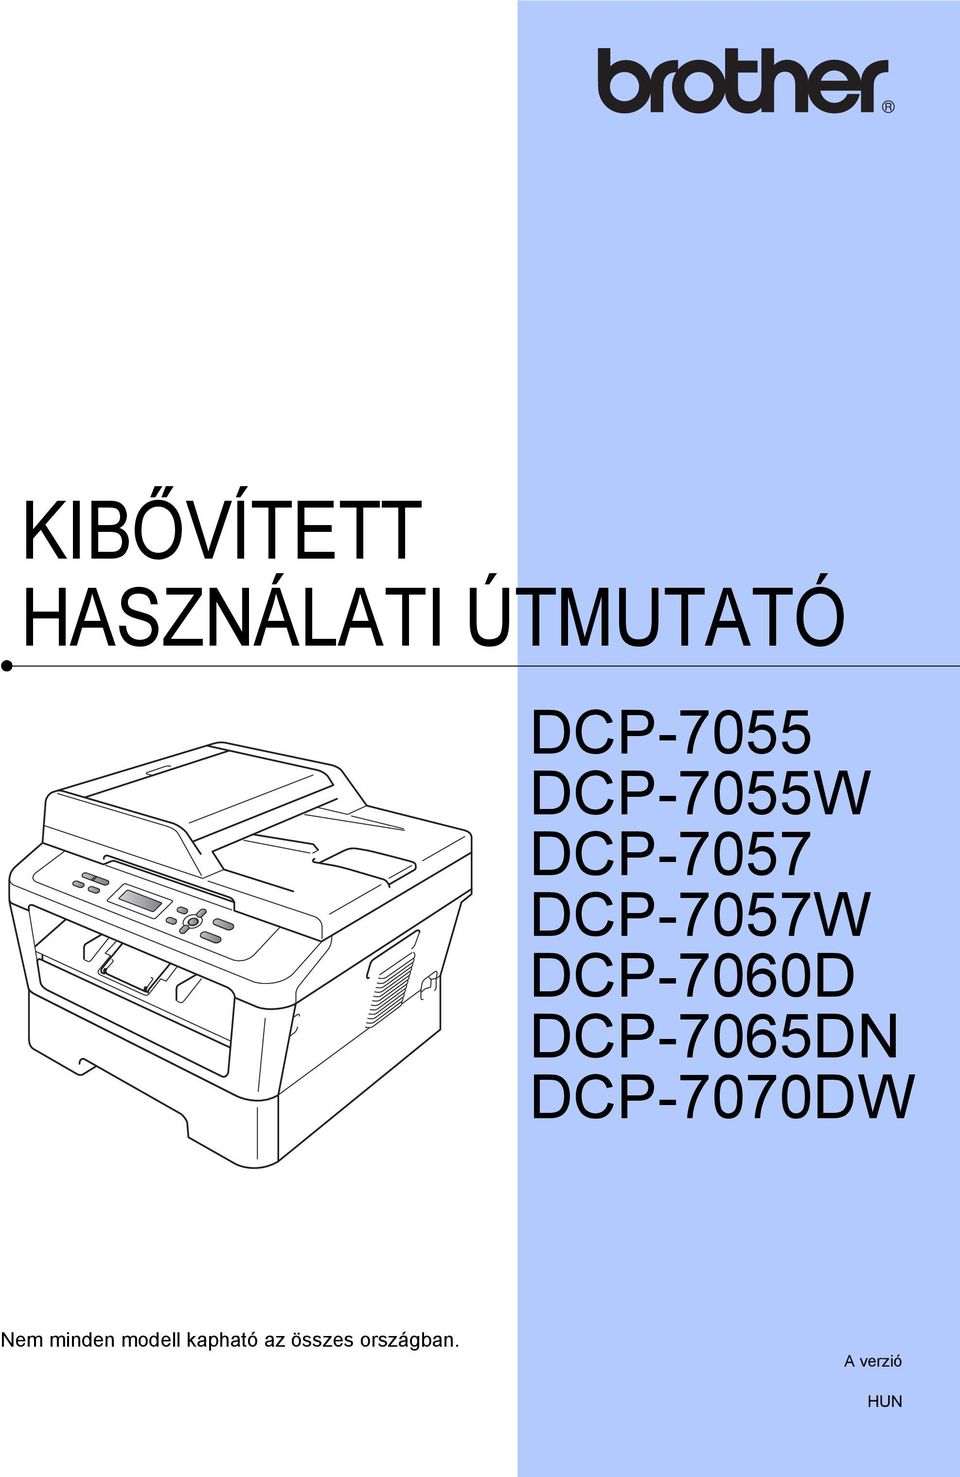 DCP-7065DN DCP-7070DW Nem minden modell